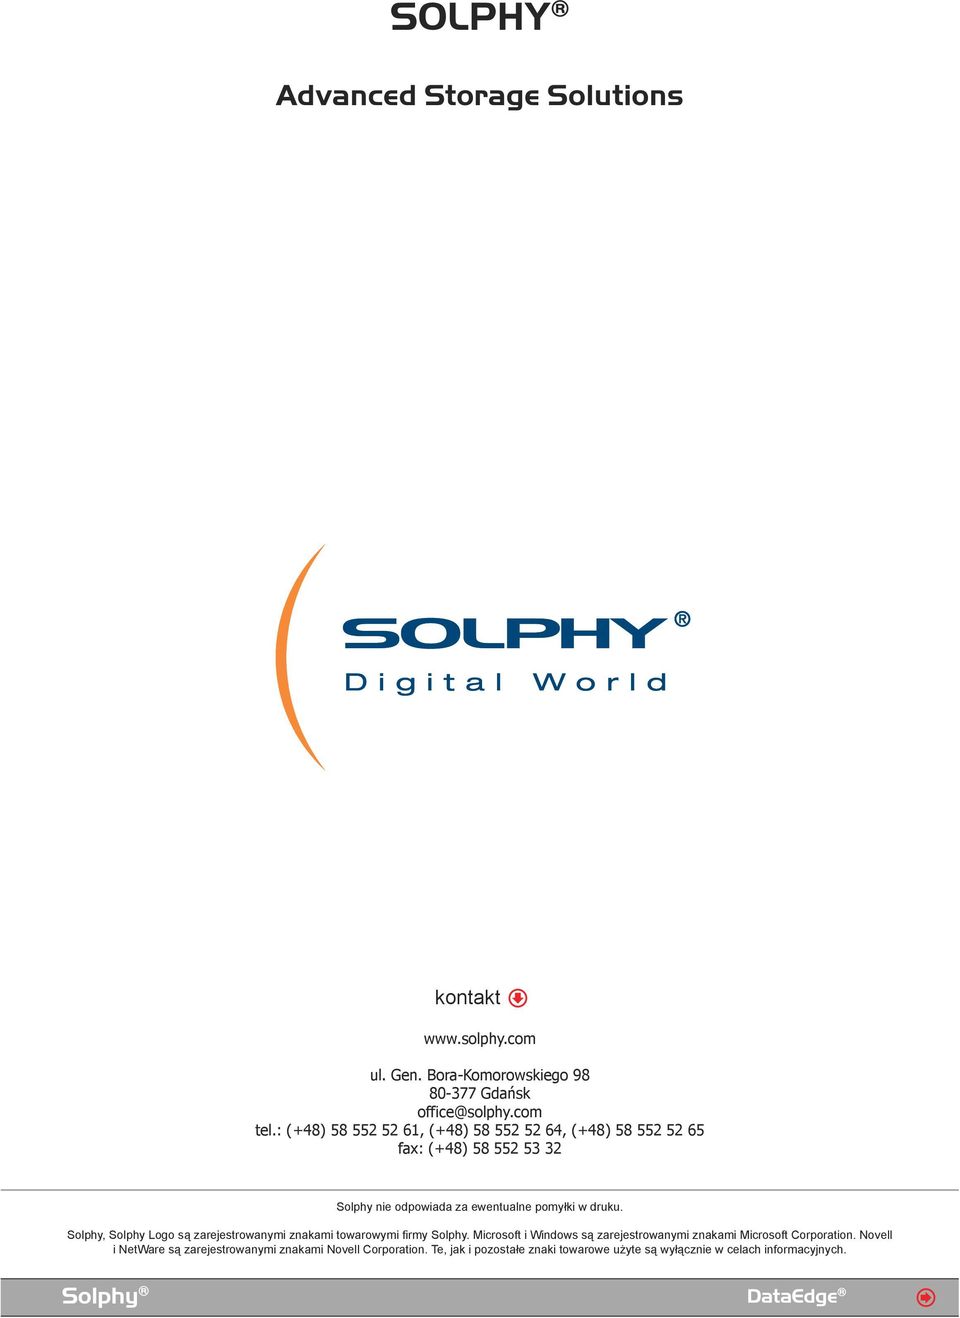 Solphy, Solphy Logo są zarejestrowanymi znakami towarowymi firmy Solphy.